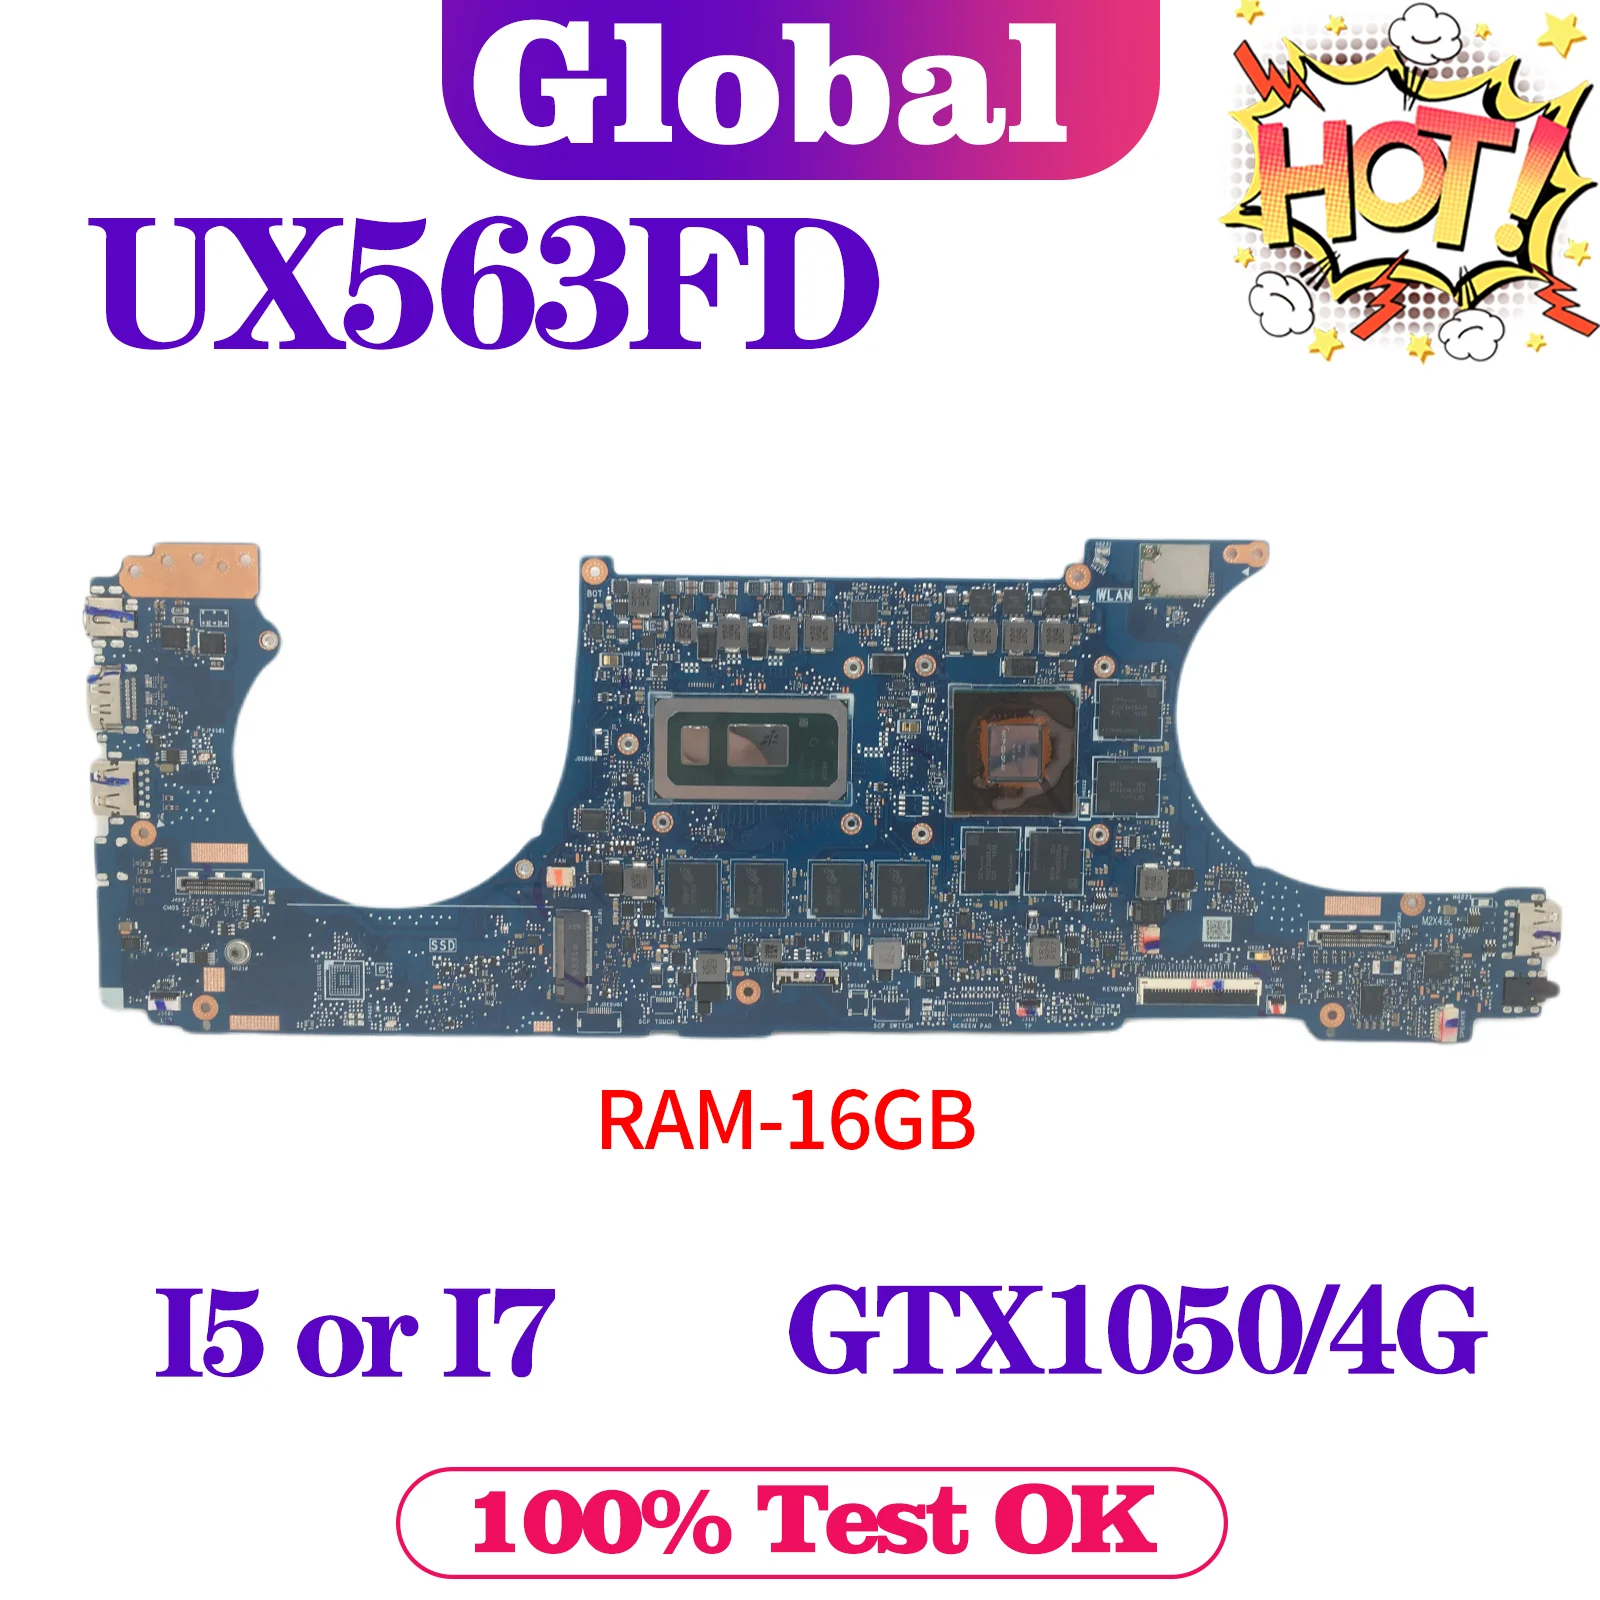 

UX563F Mainboard For ASUS Zenbook Flip 15 UX563 UX563FD BX563FD RX563FD Laptop Motherboard i5-10210U i7-10510U GTX1050/4G 16GB